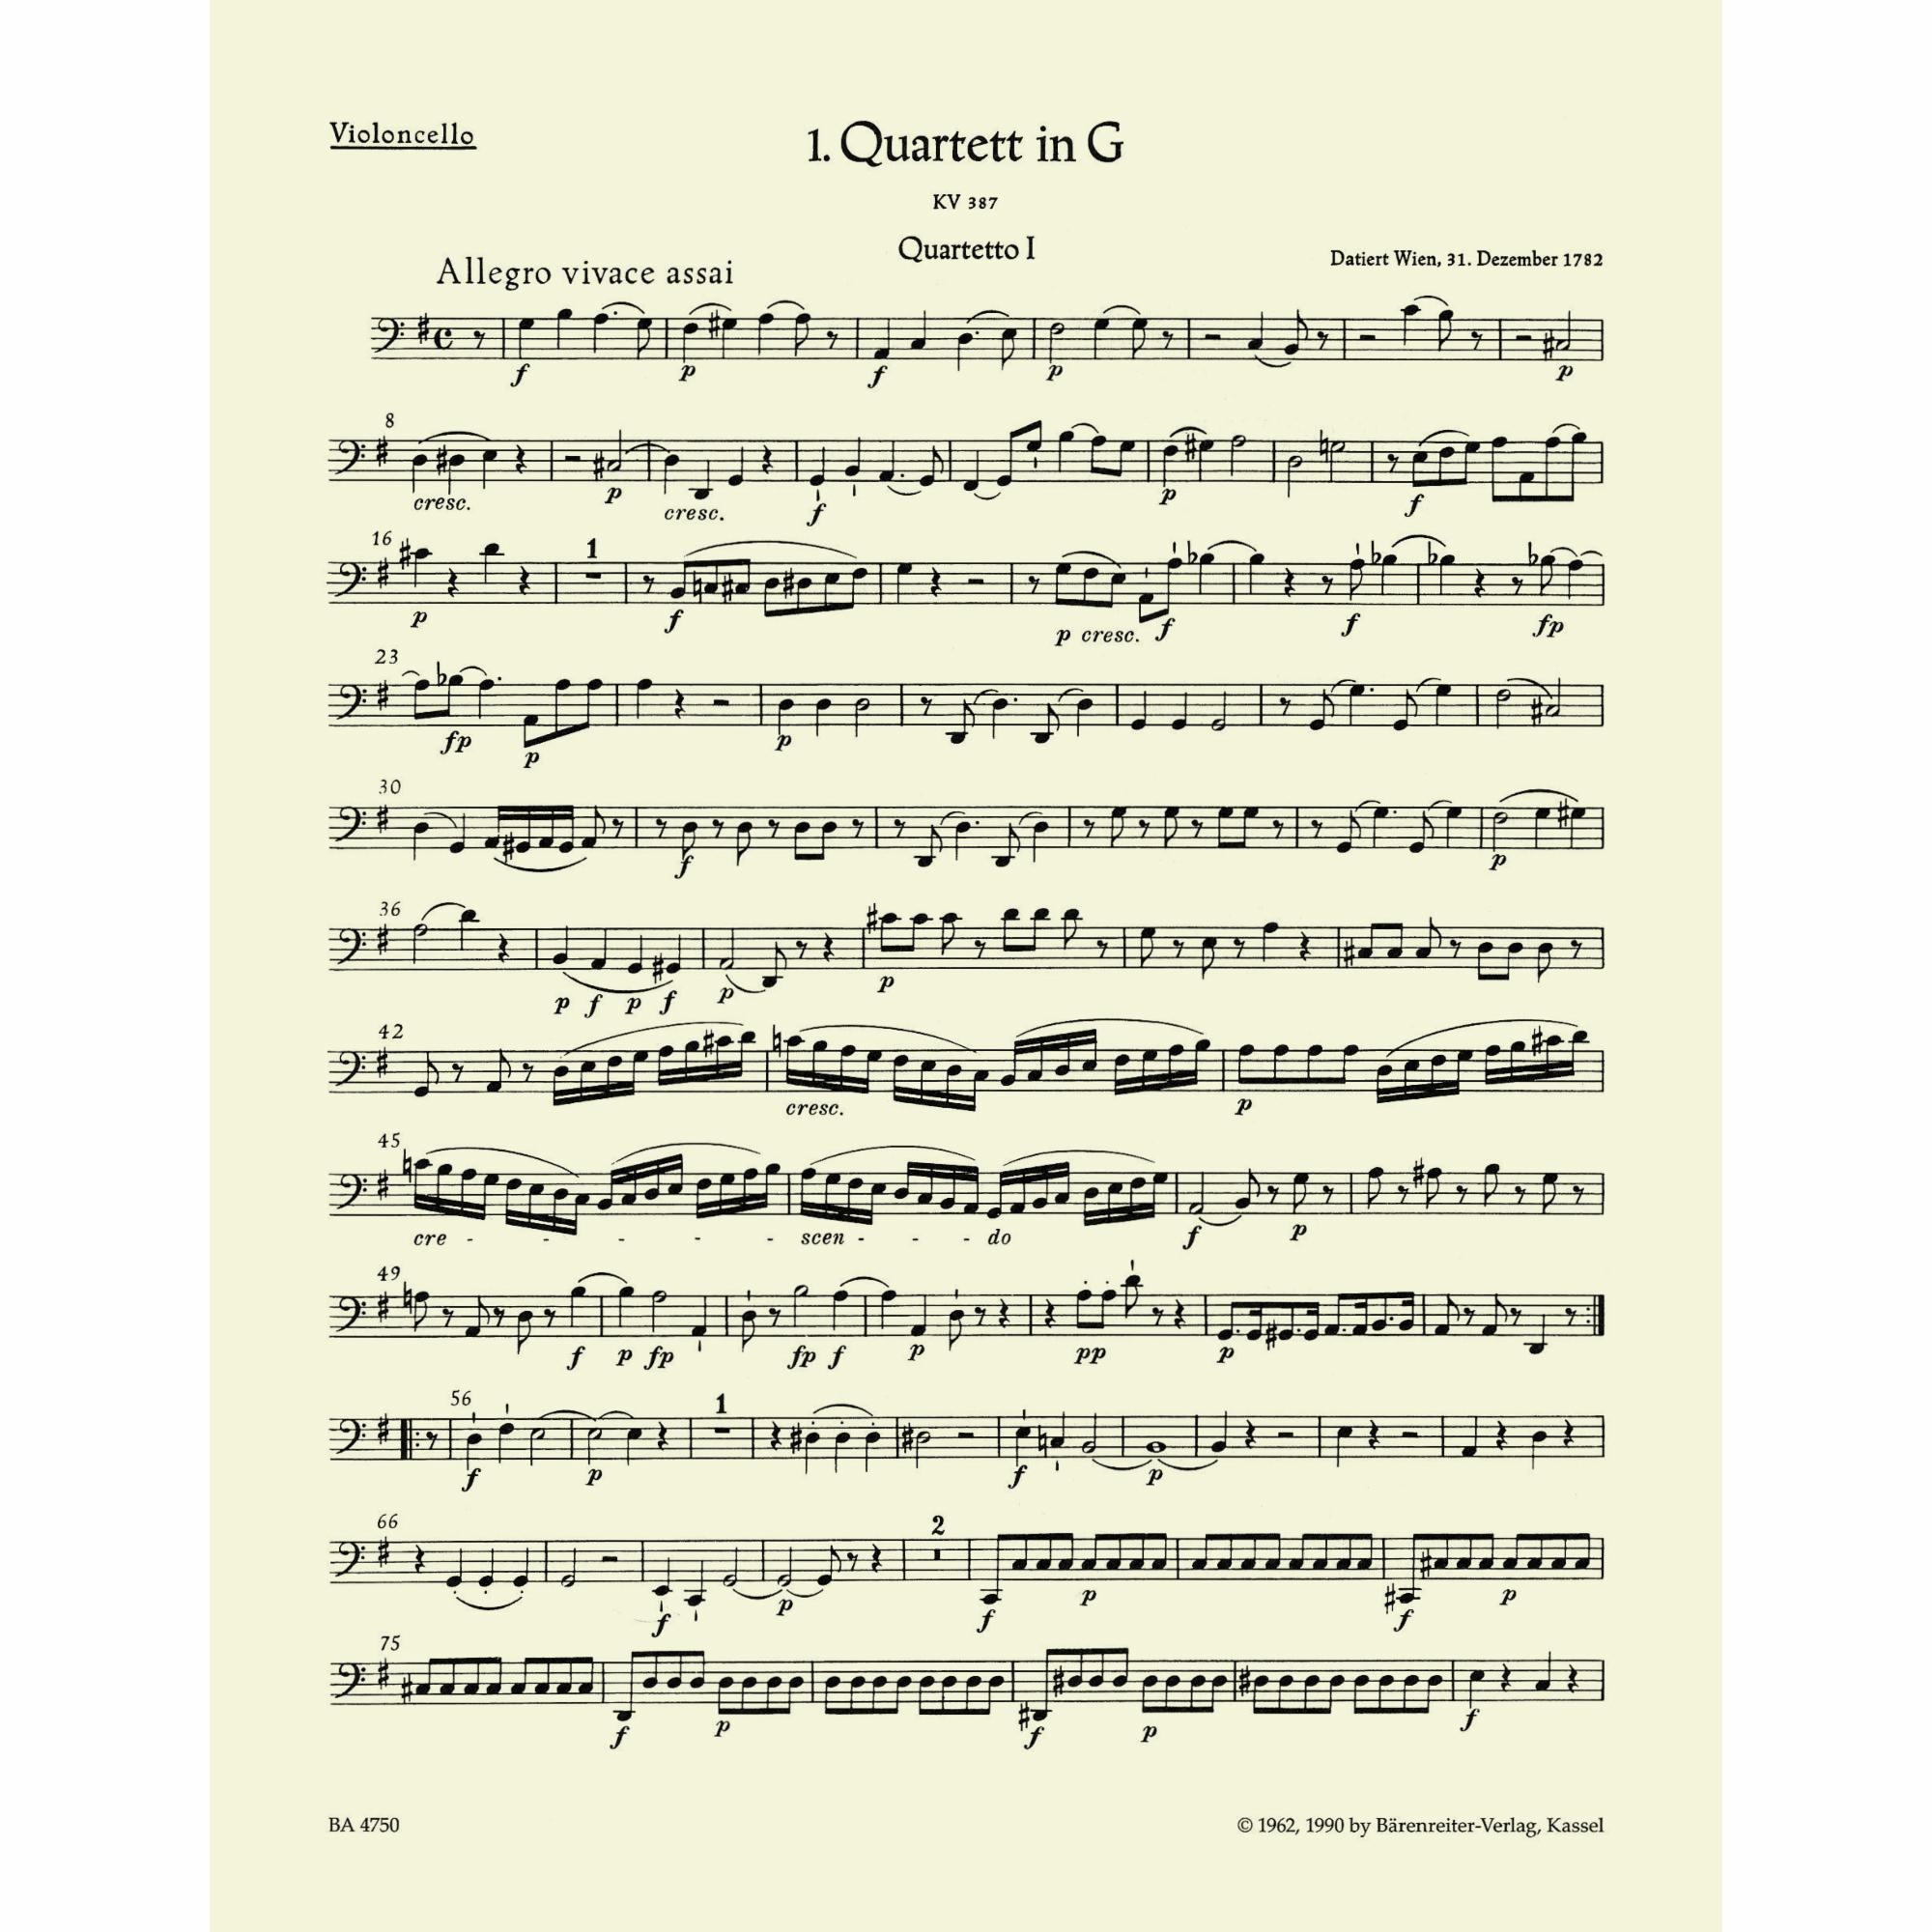 Sample: Cello (Pg. 8)